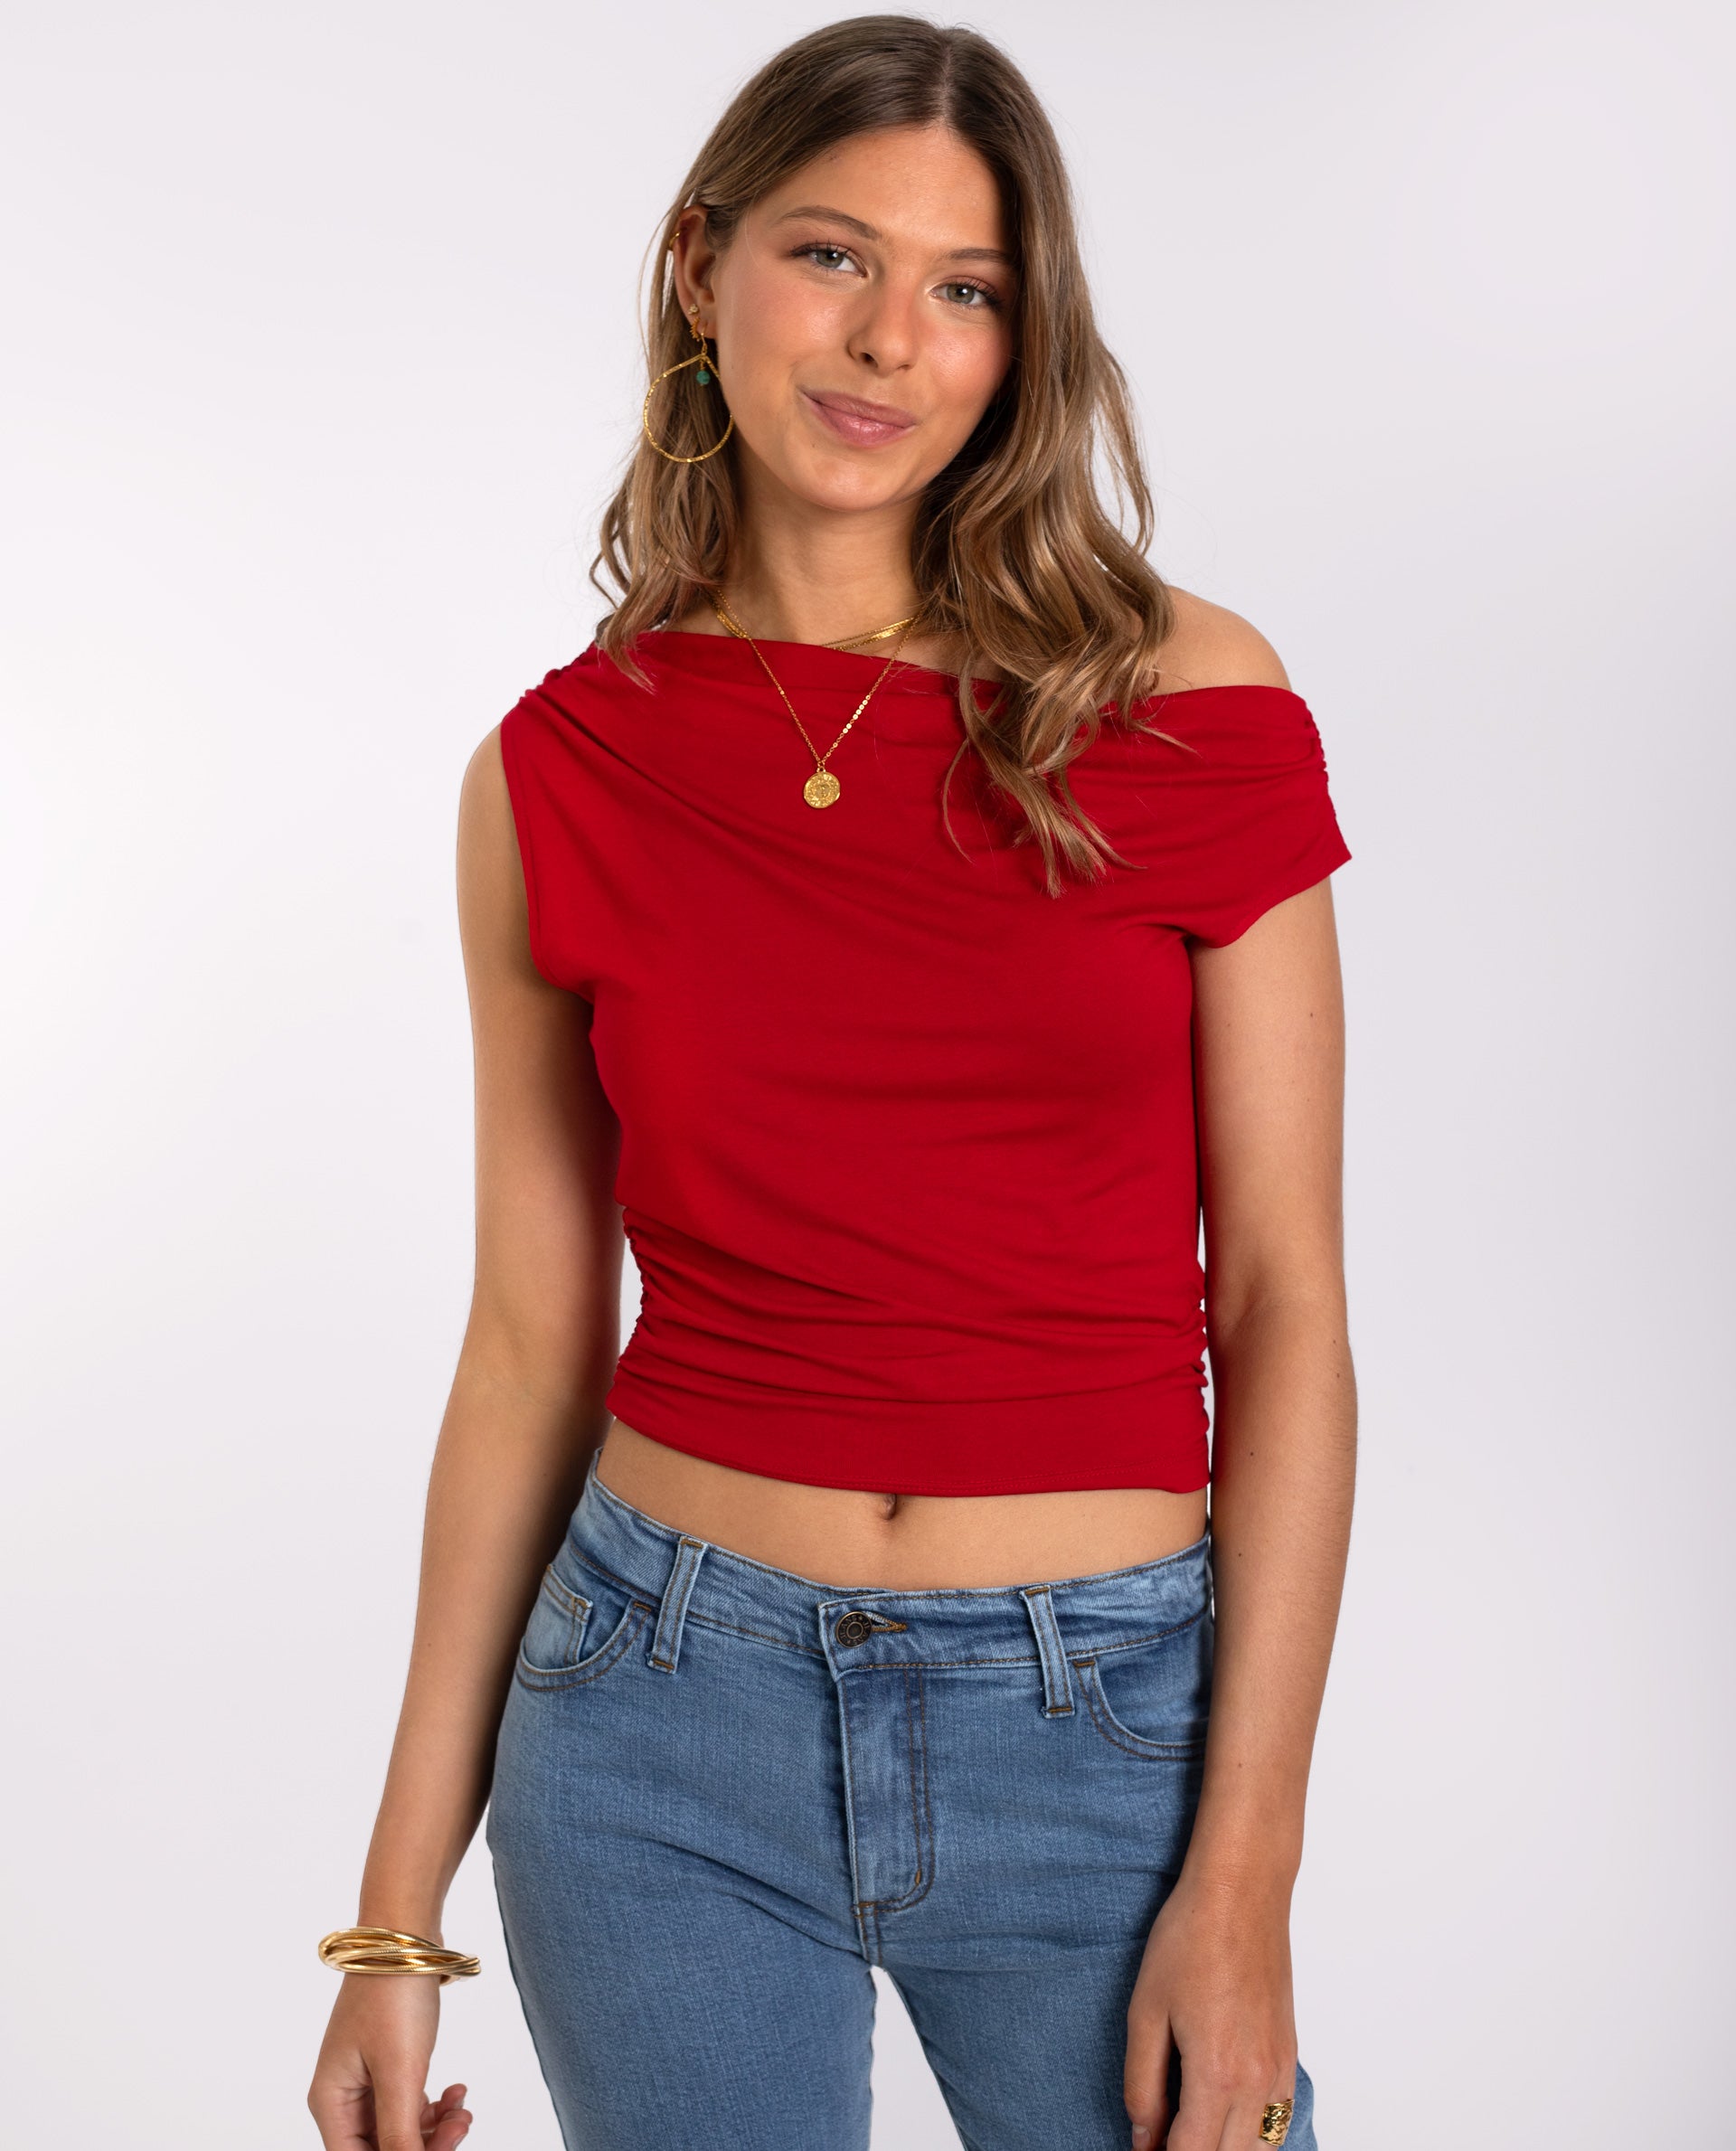 Camiseta Roja Asimétrica con Hombros Descubiertos | THE-ARE